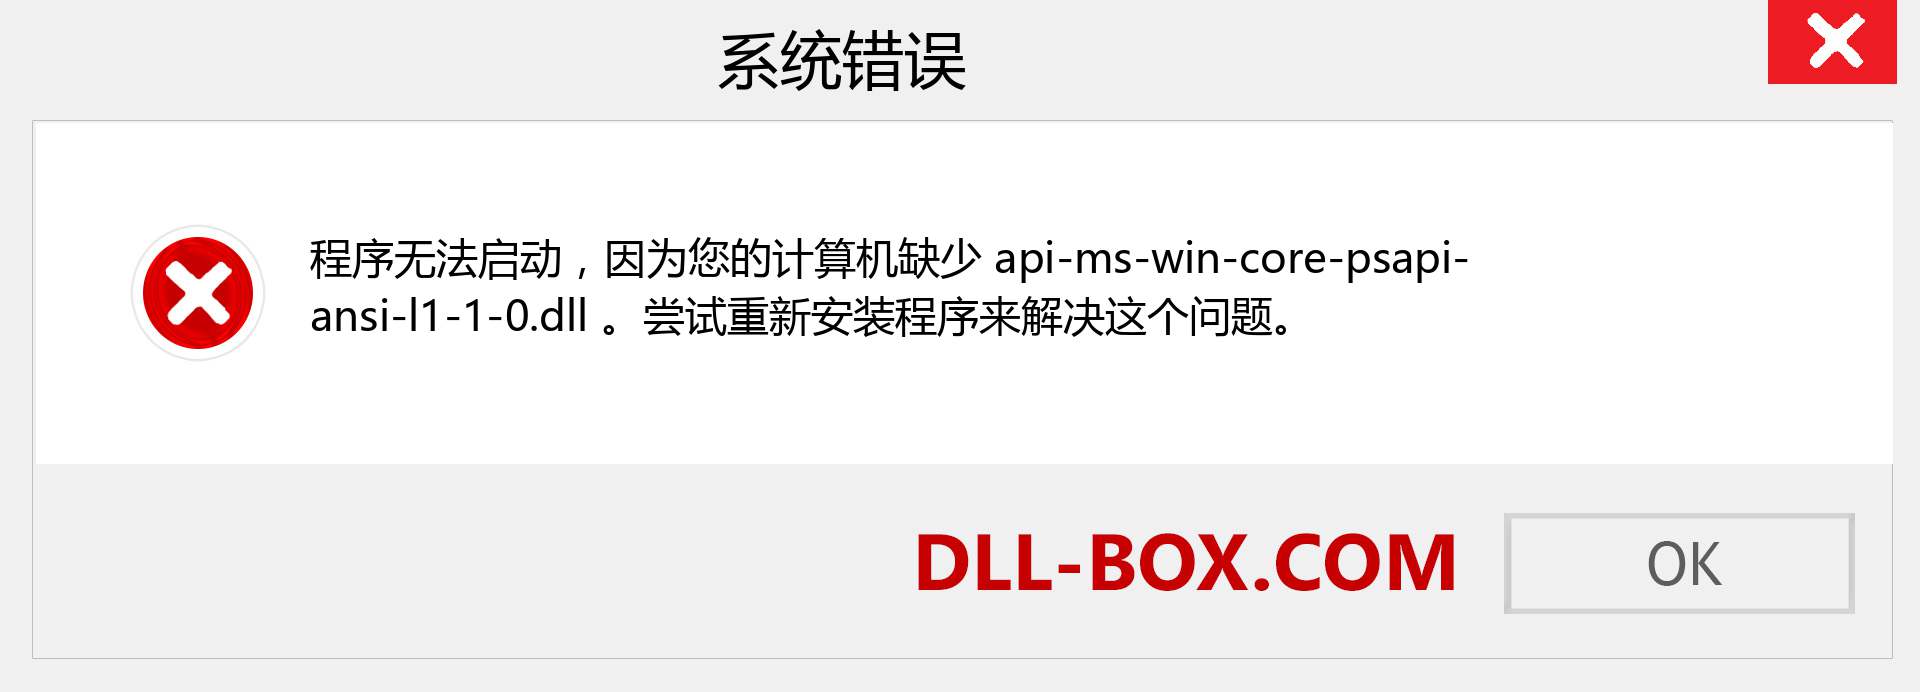 api-ms-win-core-psapi-ansi-l1-1-0.dll 文件丢失？。 适用于 Windows 7、8、10 的下载 - 修复 Windows、照片、图像上的 api-ms-win-core-psapi-ansi-l1-1-0 dll 丢失错误